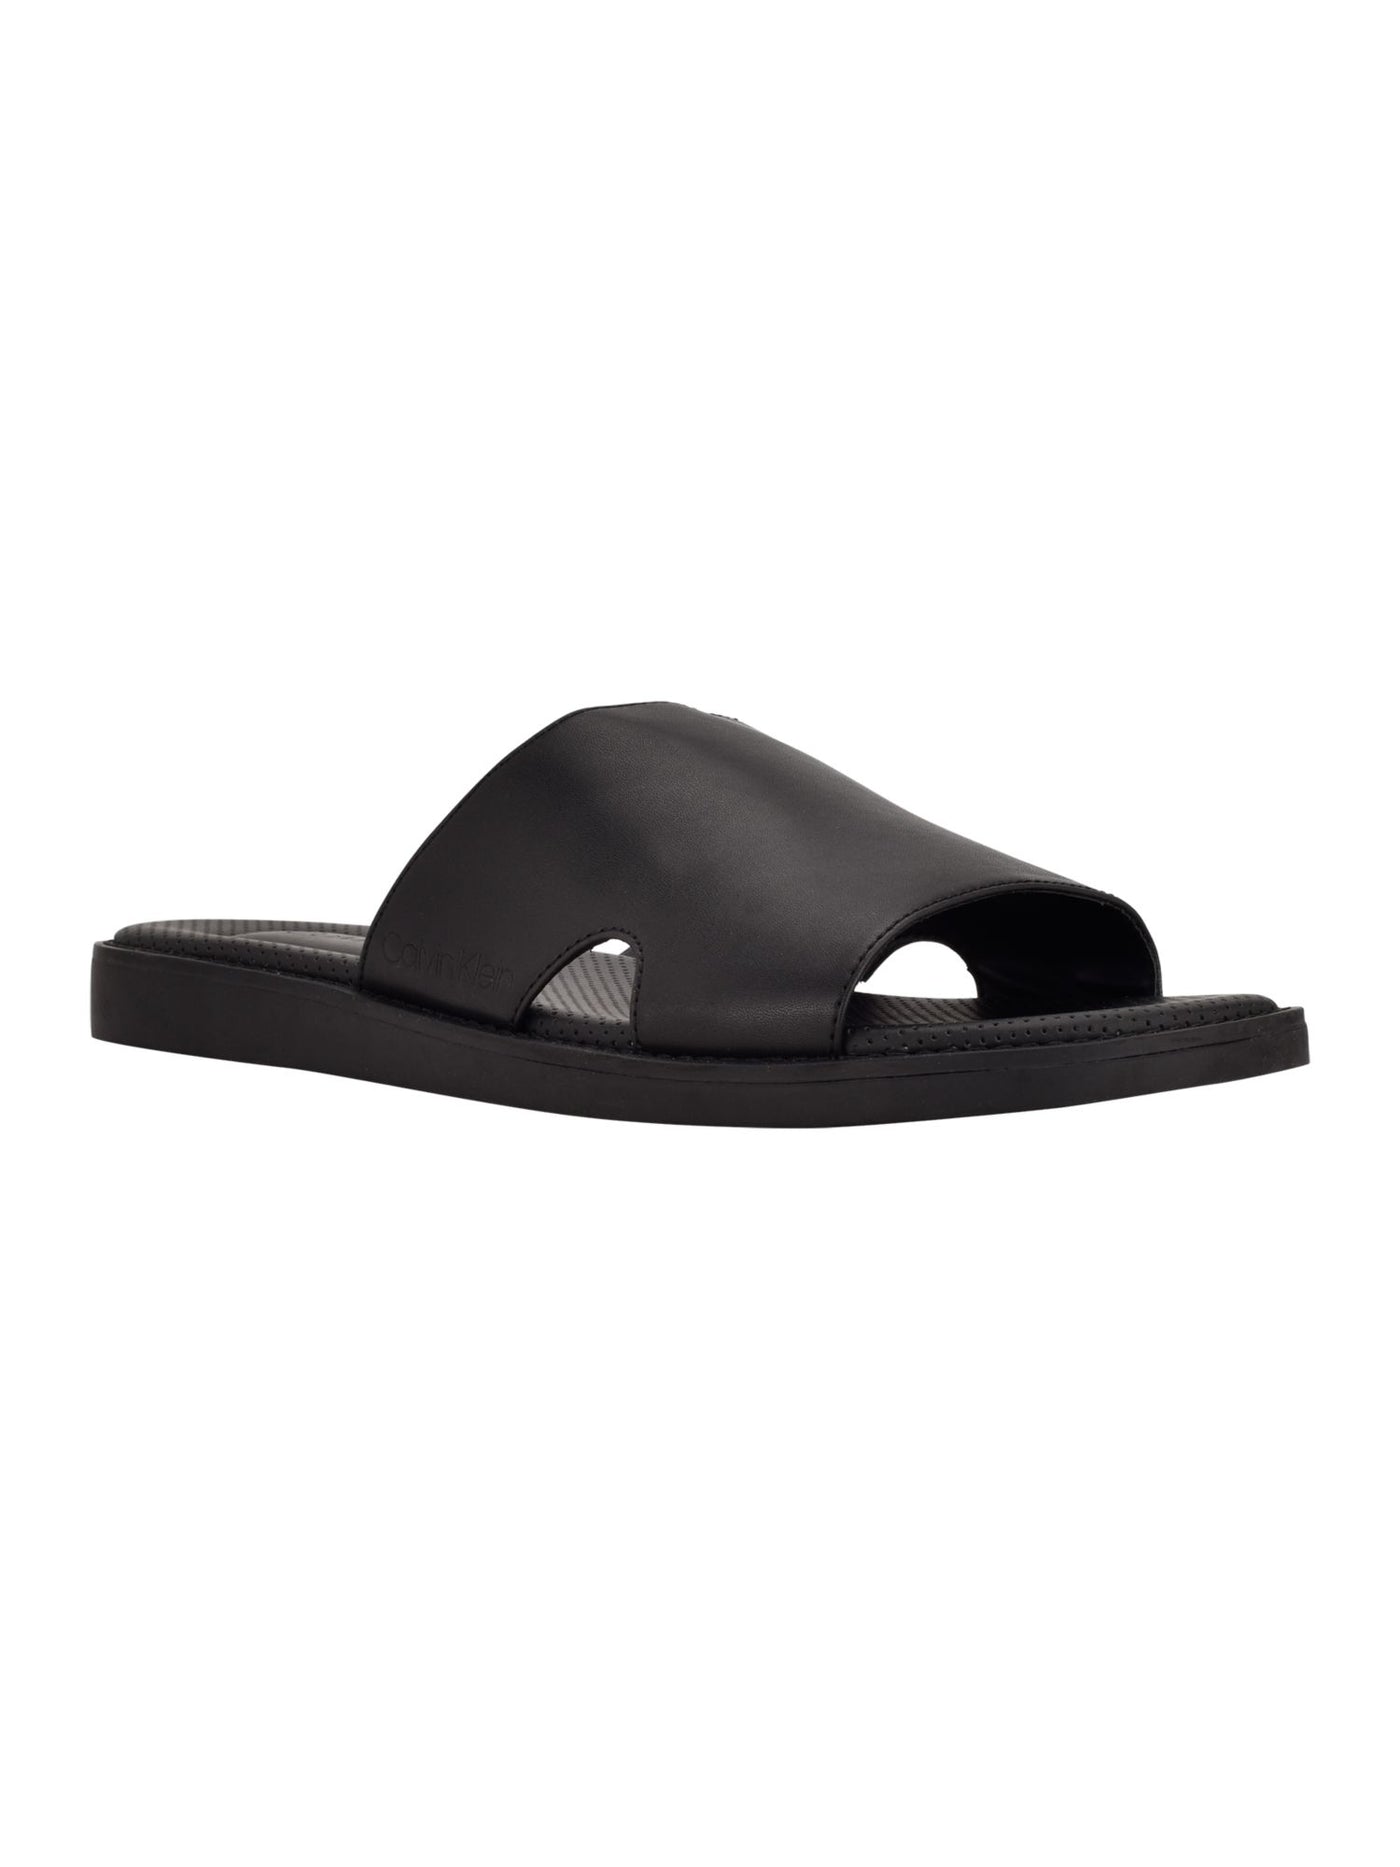 CALVIN KLEIN Mens Black Padded Goring Ethan Round Toe Wedge Slip On Slide Sandals Shoes 10.5